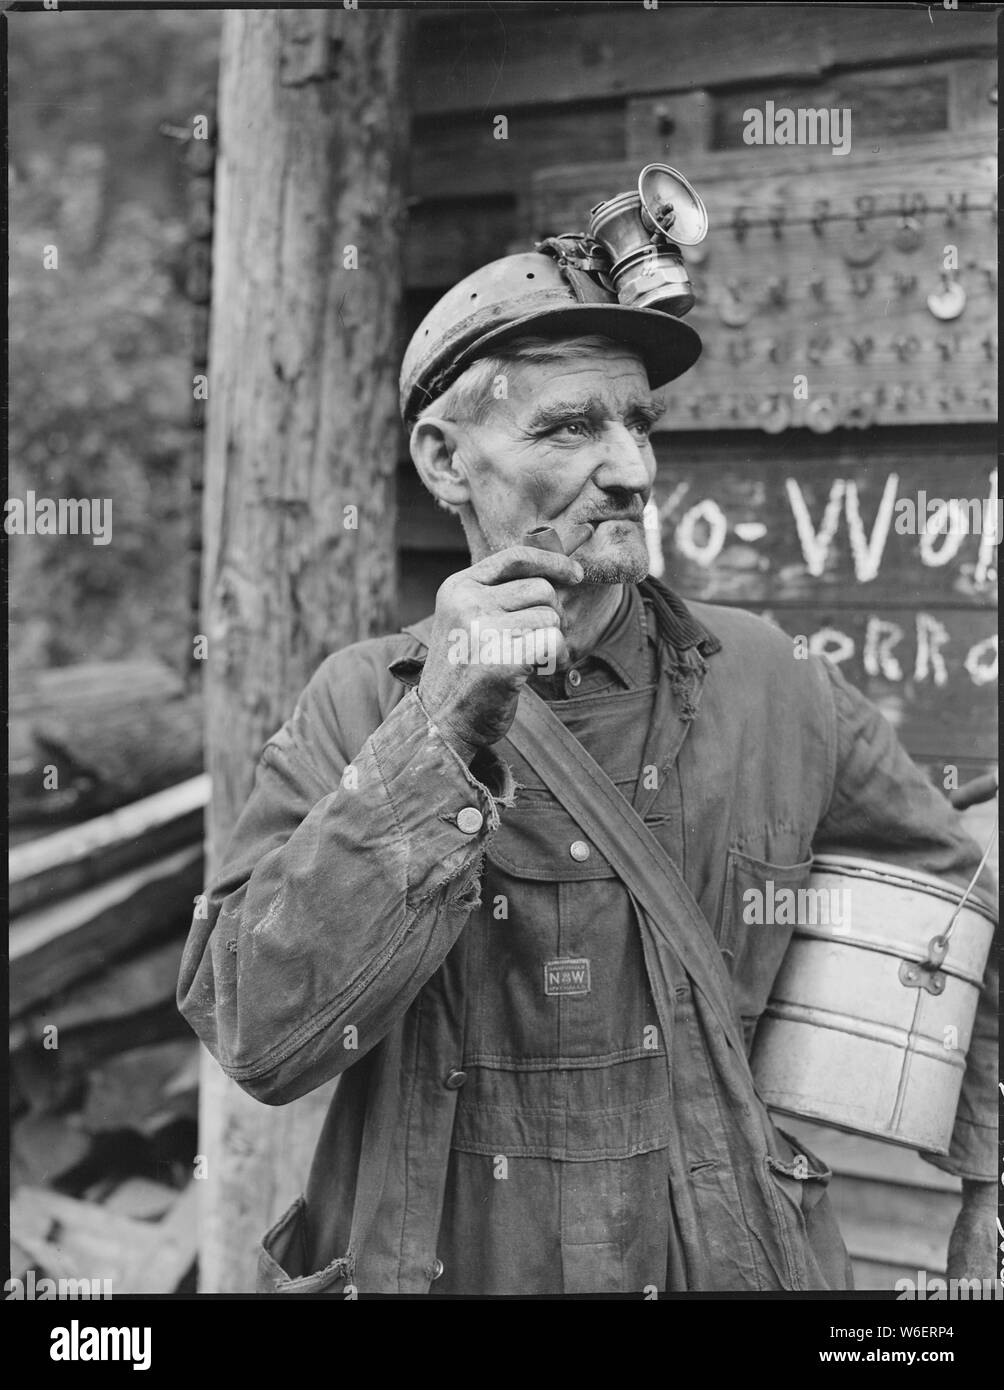 A miner. P V & K Coal Company, Clover Mine, Lejunior, Harlan County, Kentucky. Stock Photo